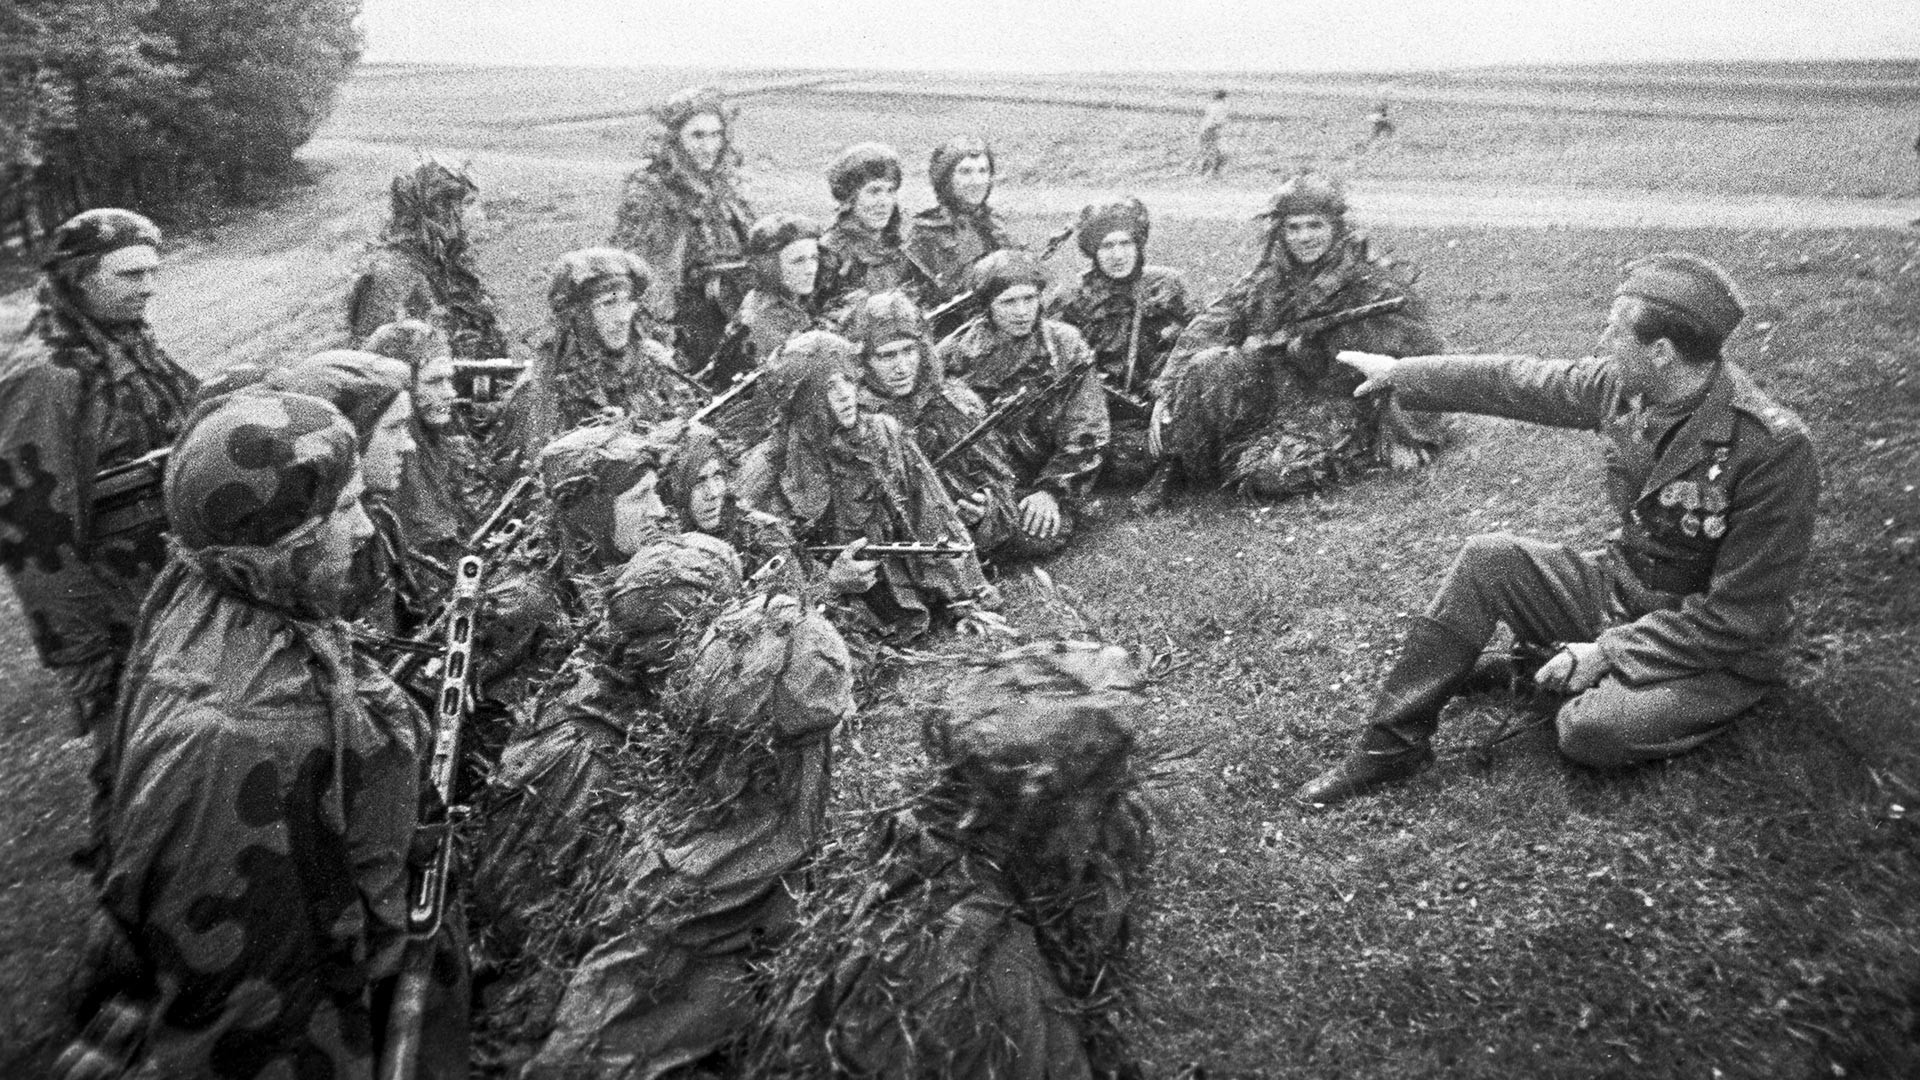 Великата отечествена война 1941-1945 Пржка операция (6-11 май 1945 г.). Командир на рота автоматчици от 1-ви пехотен батальон на 1-ва отделна чехословашка пехотна бригада в състава на 51-ви стрелкови корпус на 38-а армия на 1-ви украински фронт Антонин Сохор